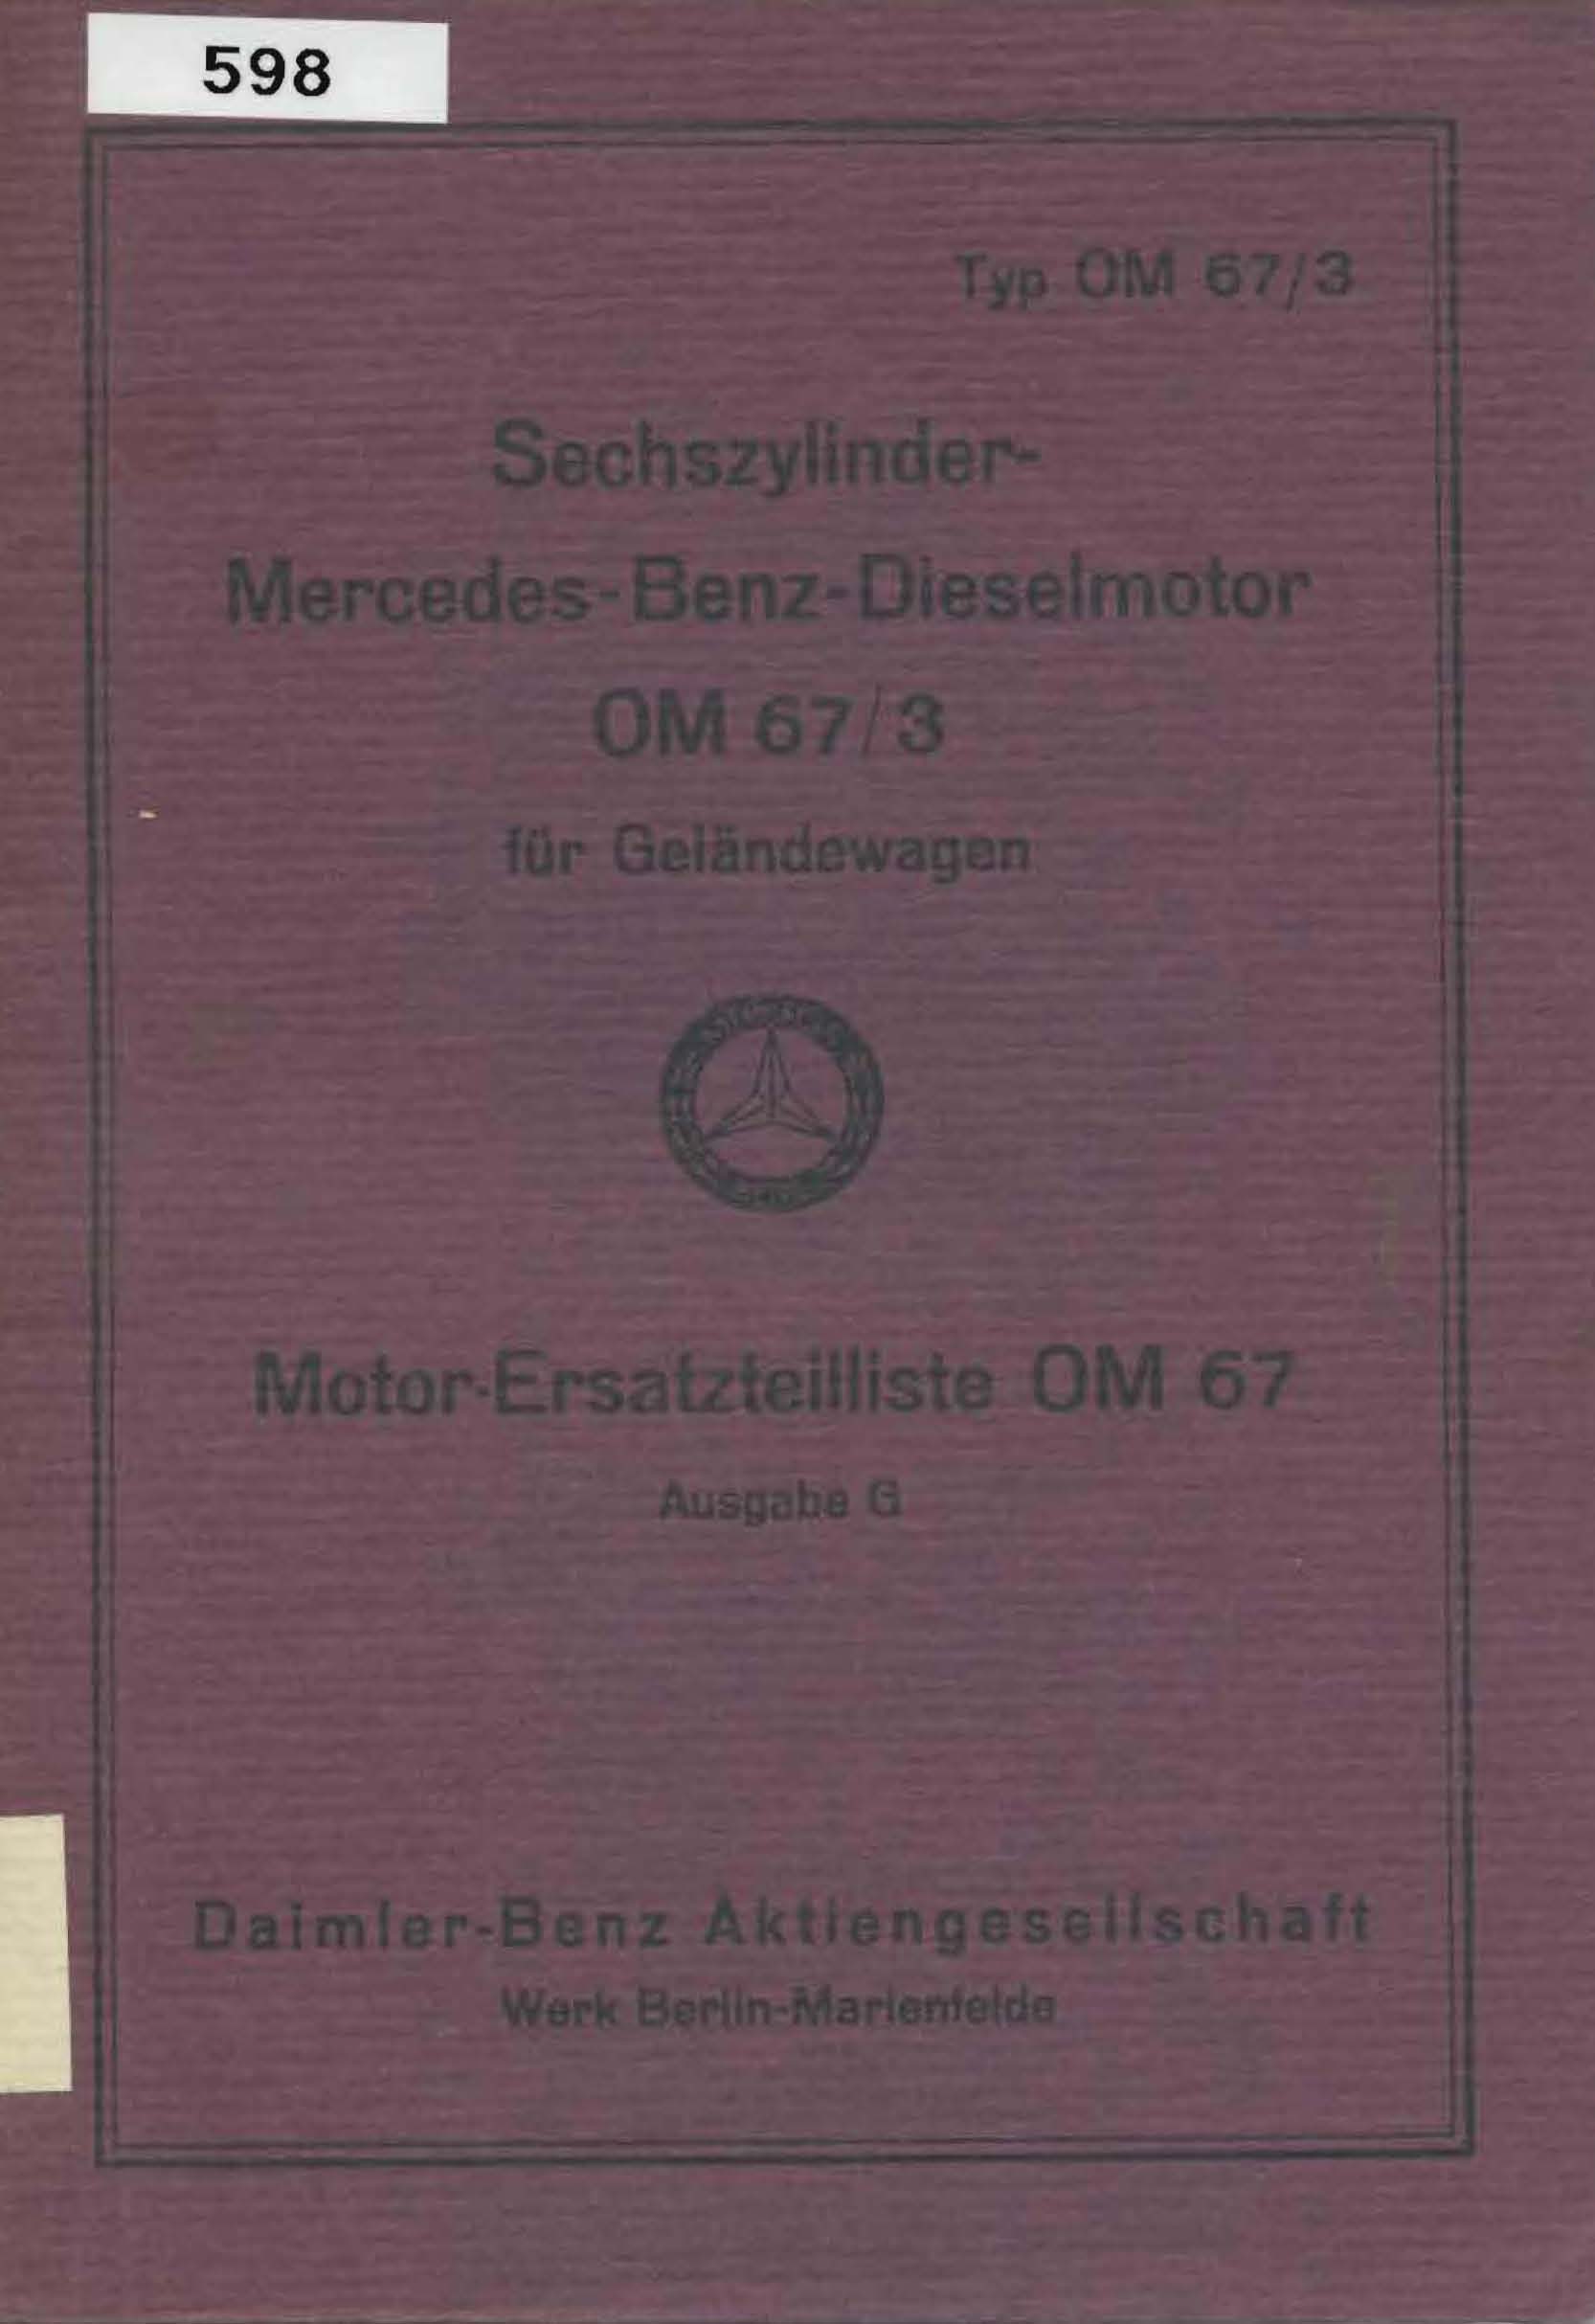 Sechszylinder Mercedes-Benz-Dieselmotor OM 67/3 für Geländewagen